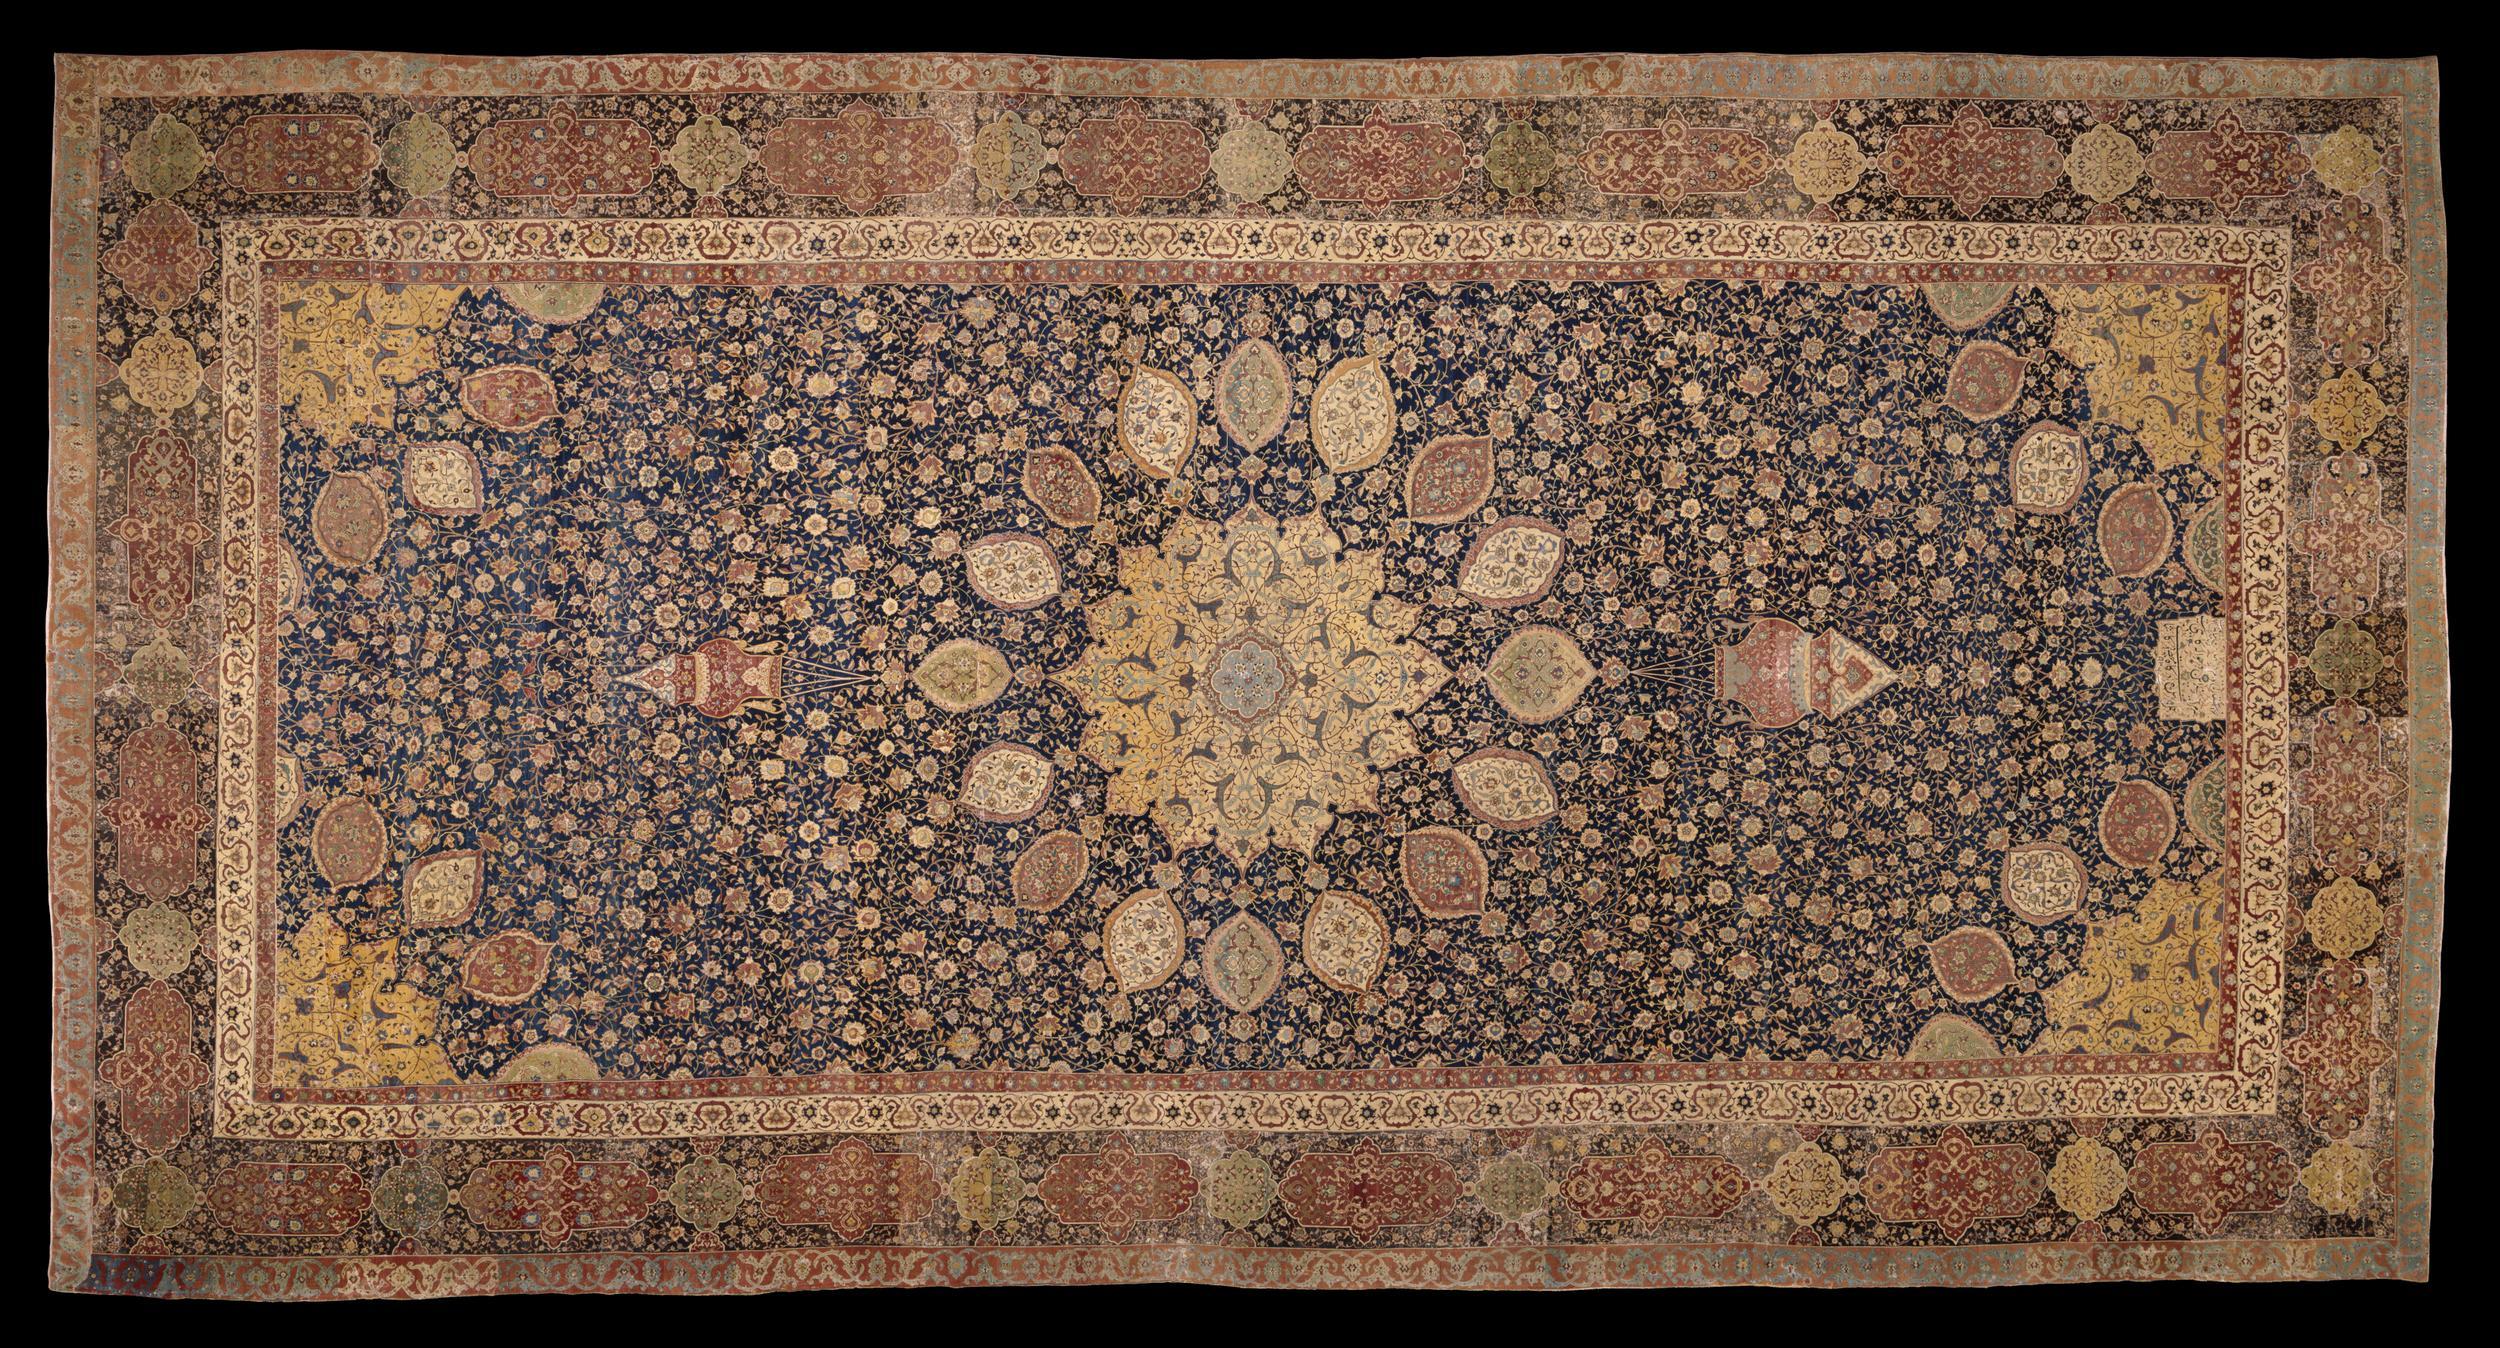 阿爾達比勒地毯 by Unknown Artist - 1539 - 1540 - 11 x 5.35 m 